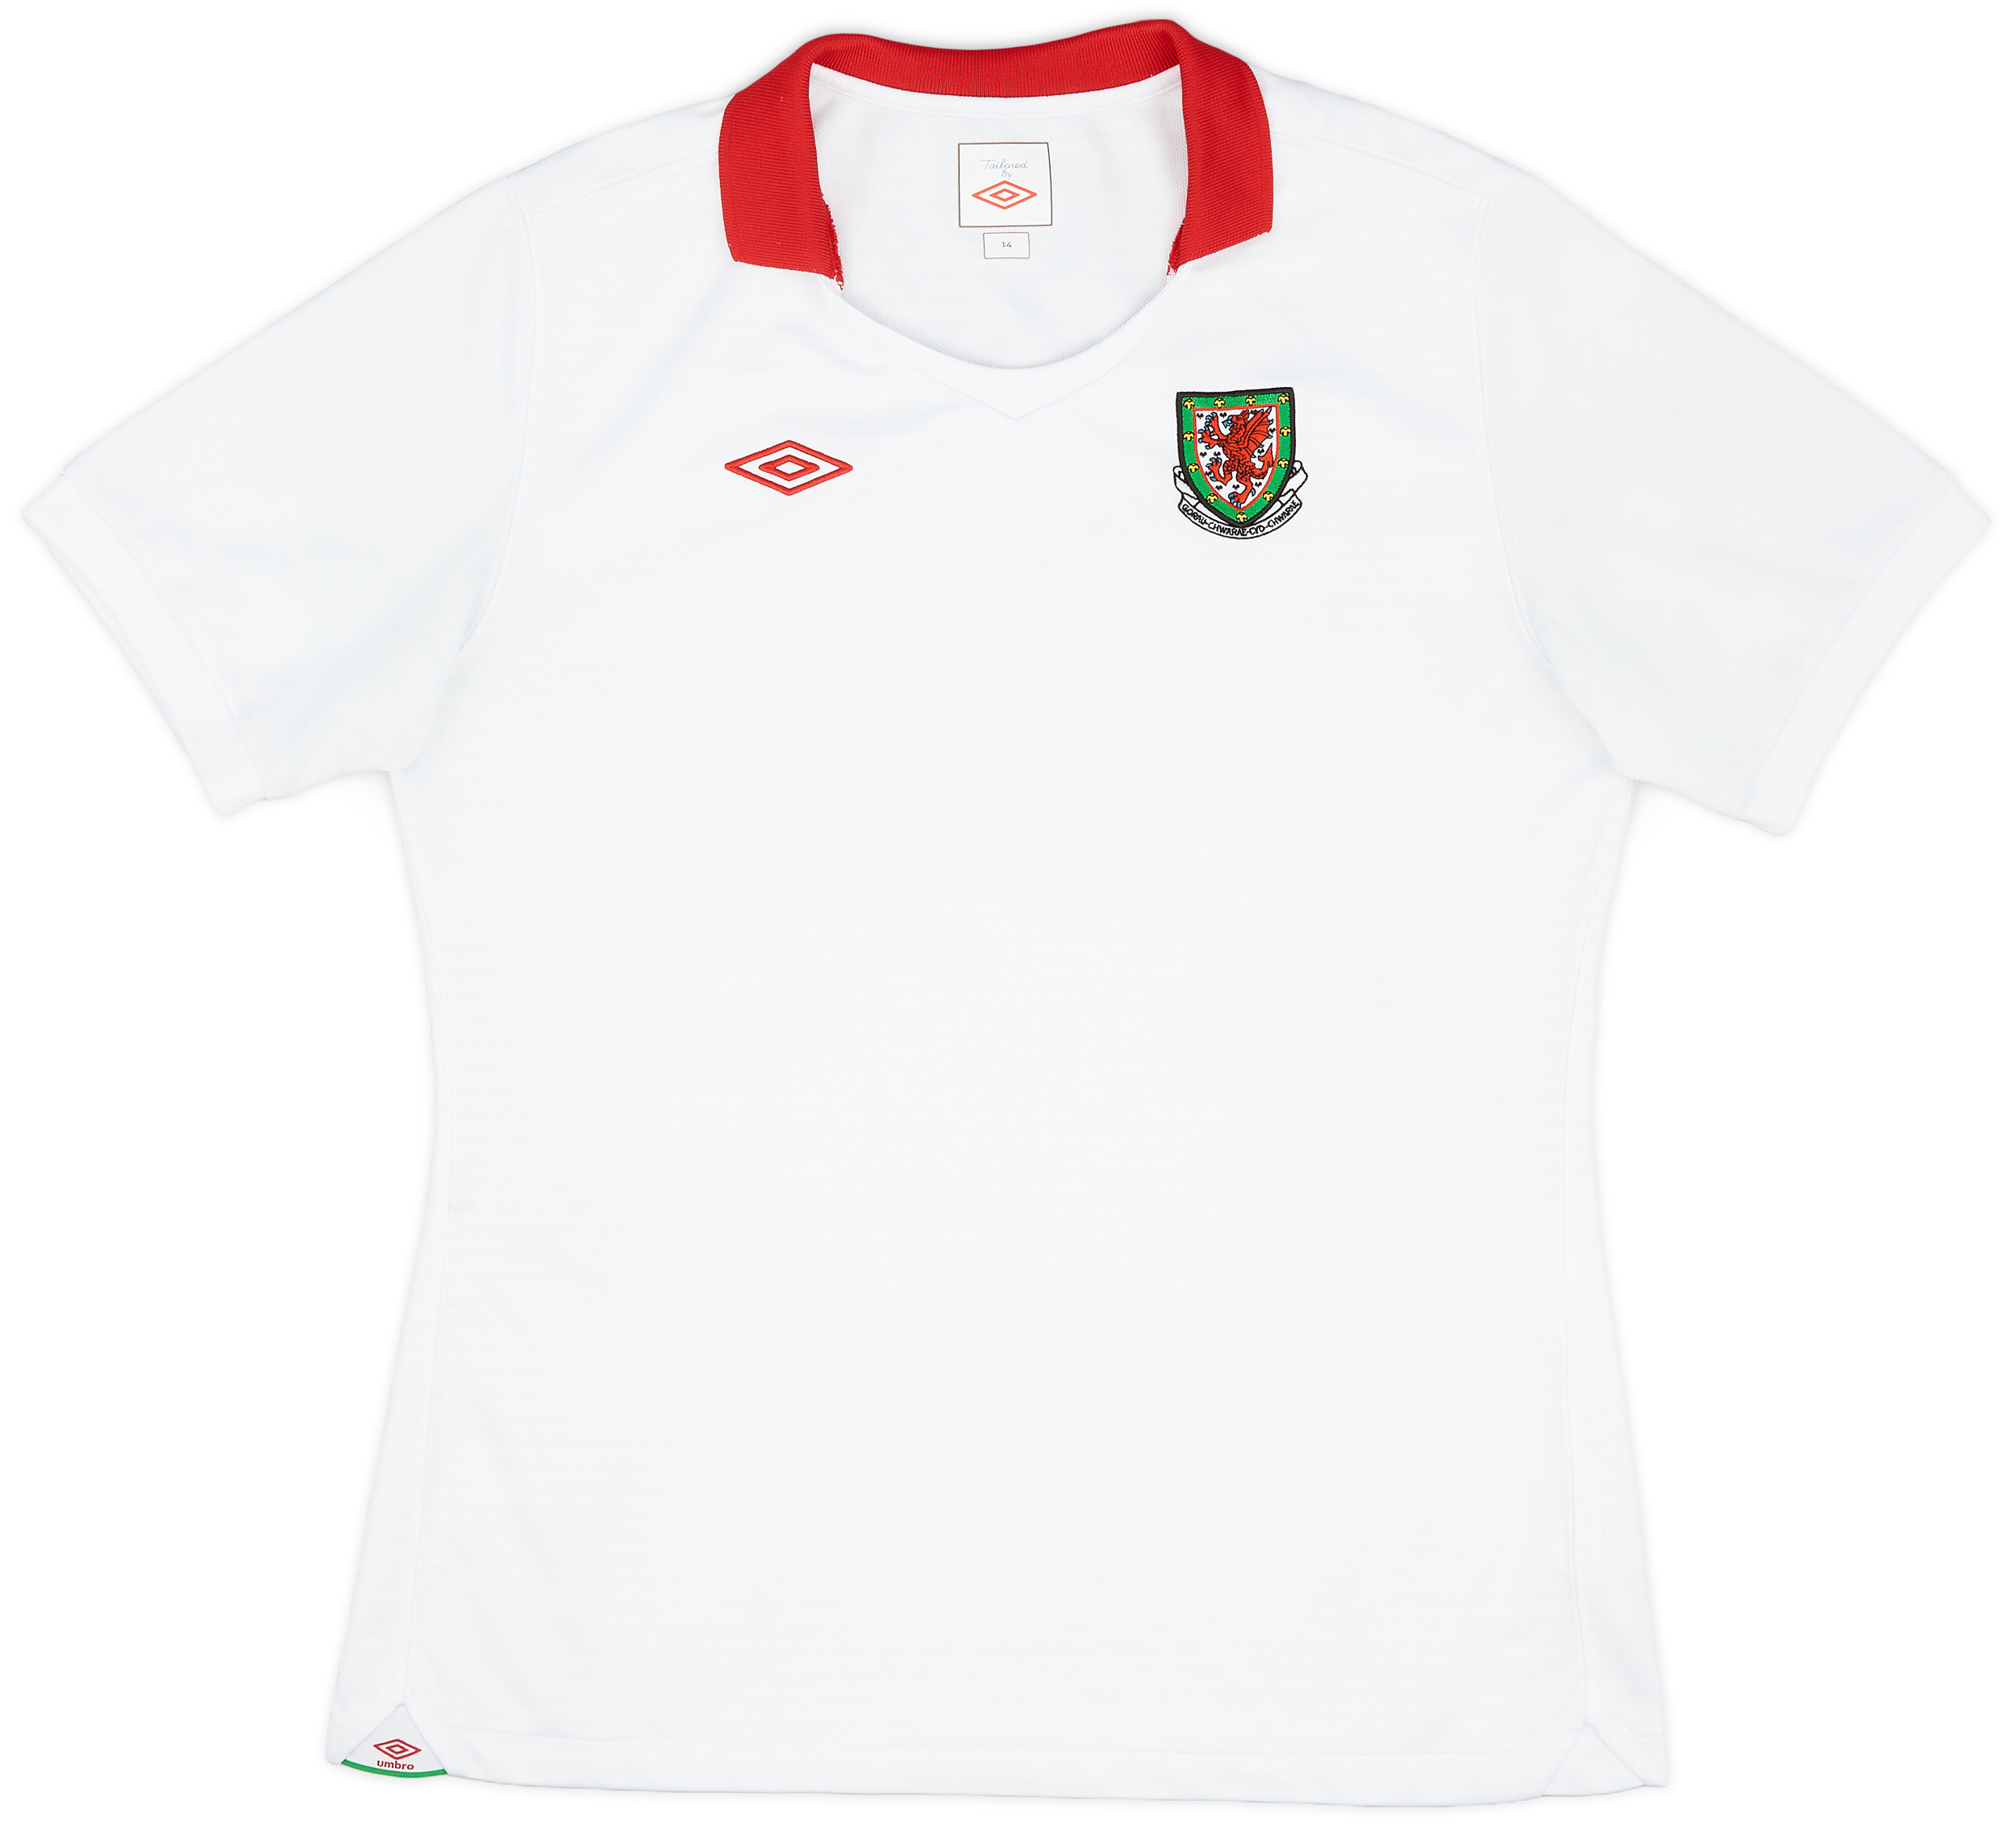 2010-11 Wales Away Shirt - 9/10 - (Women's )